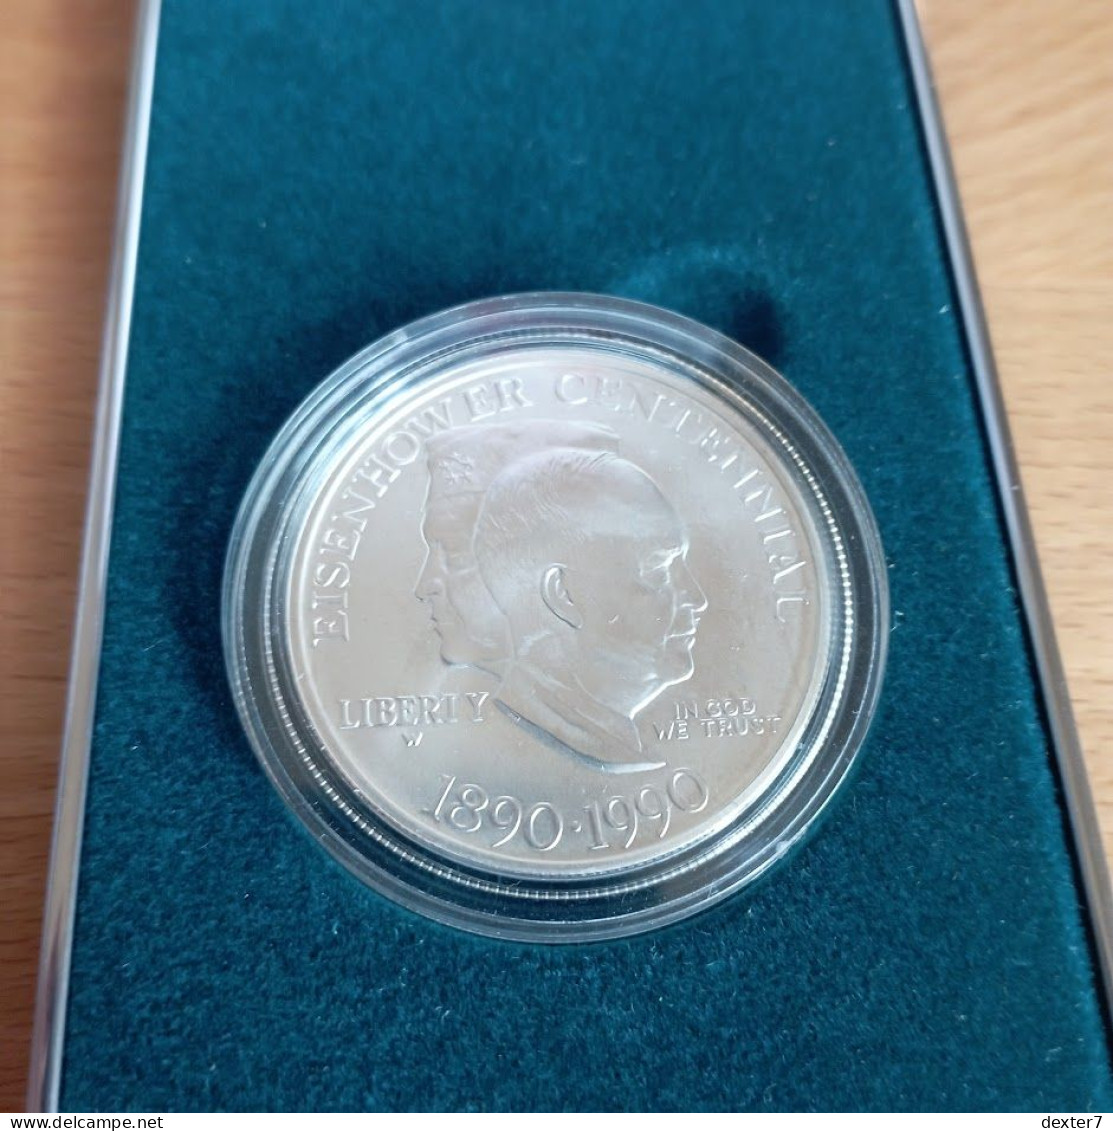 United States USA 1990 Eisenhower Centennial Silver 900 1 Dollar - Gedenkmünzen